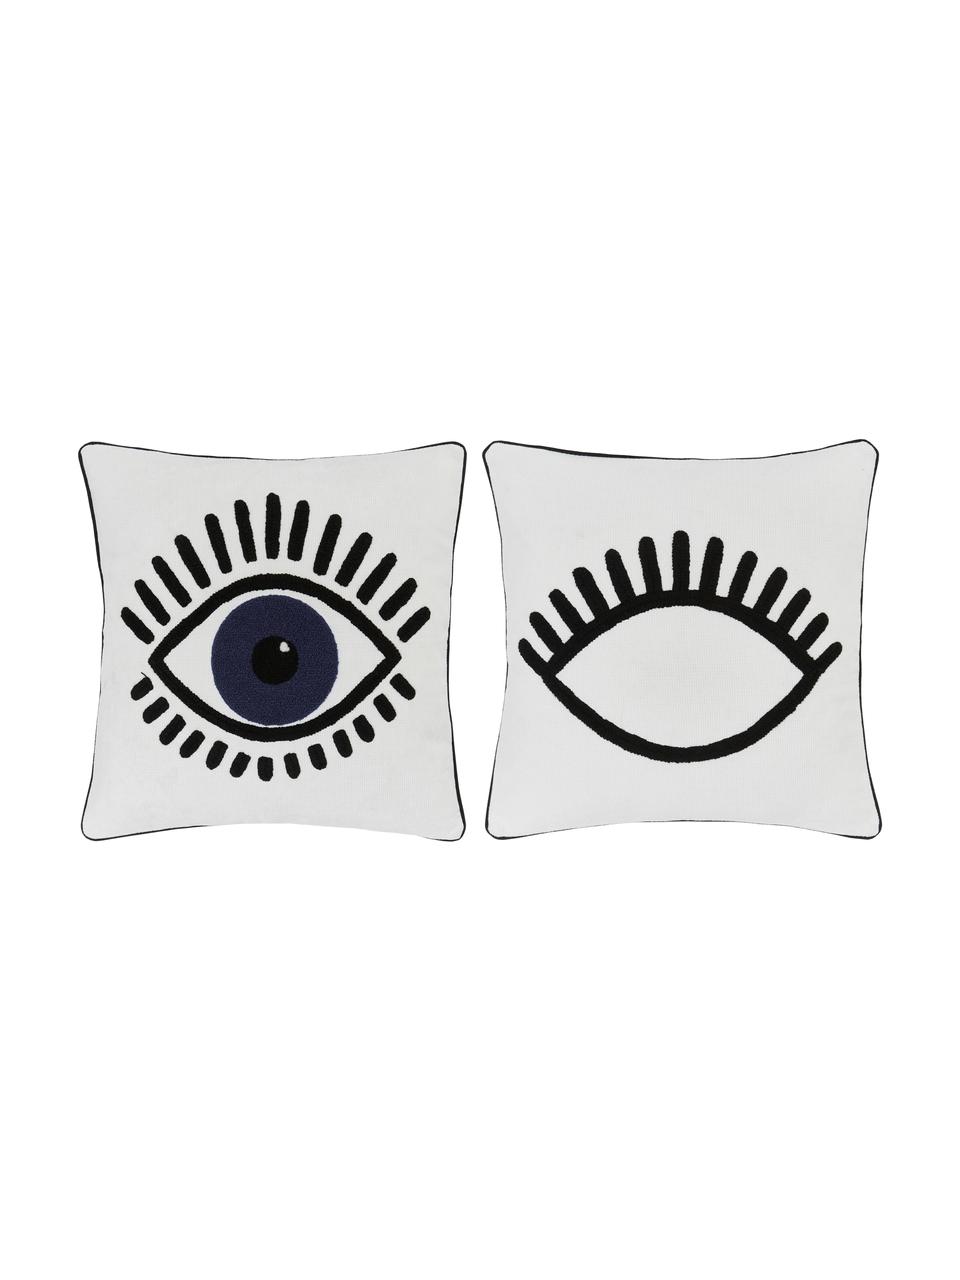 Kussenhoes Charms met oogmotief, 2 stuks, 100% katoen, Wit, zwart, blauw, 45 x 45 cm